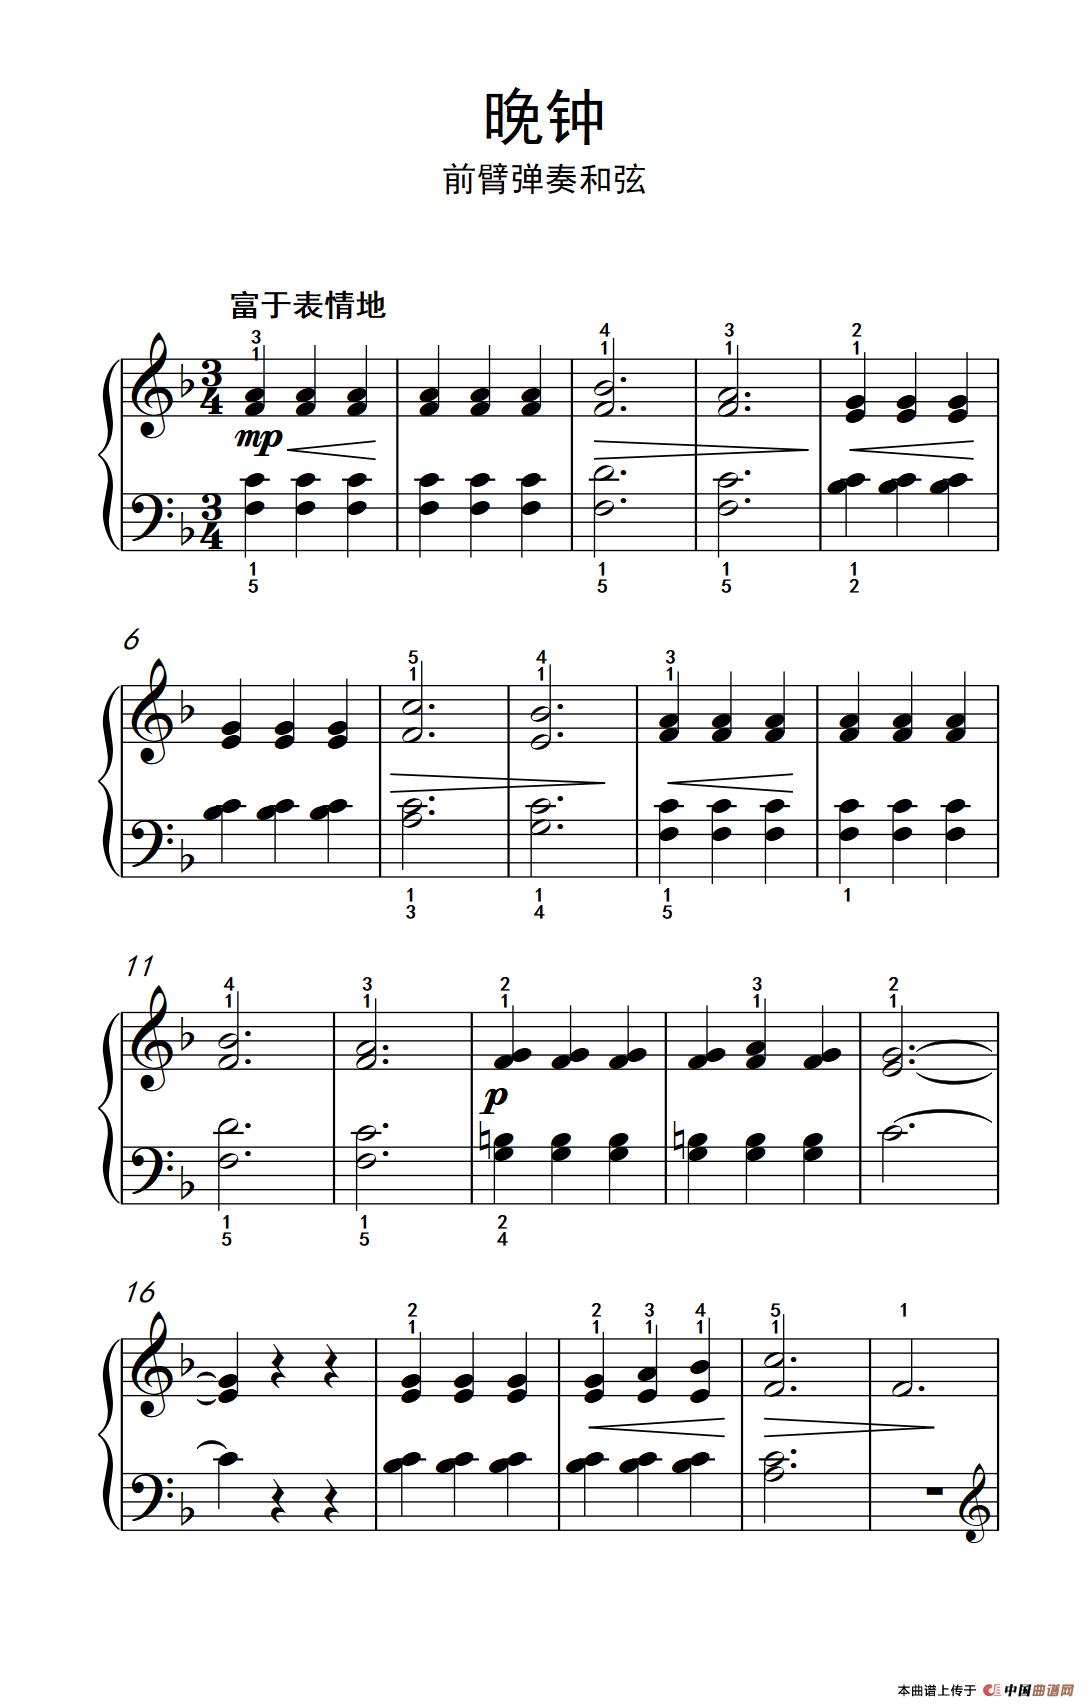 《晚钟 前臂弹奏和弦》钢琴曲谱图分享